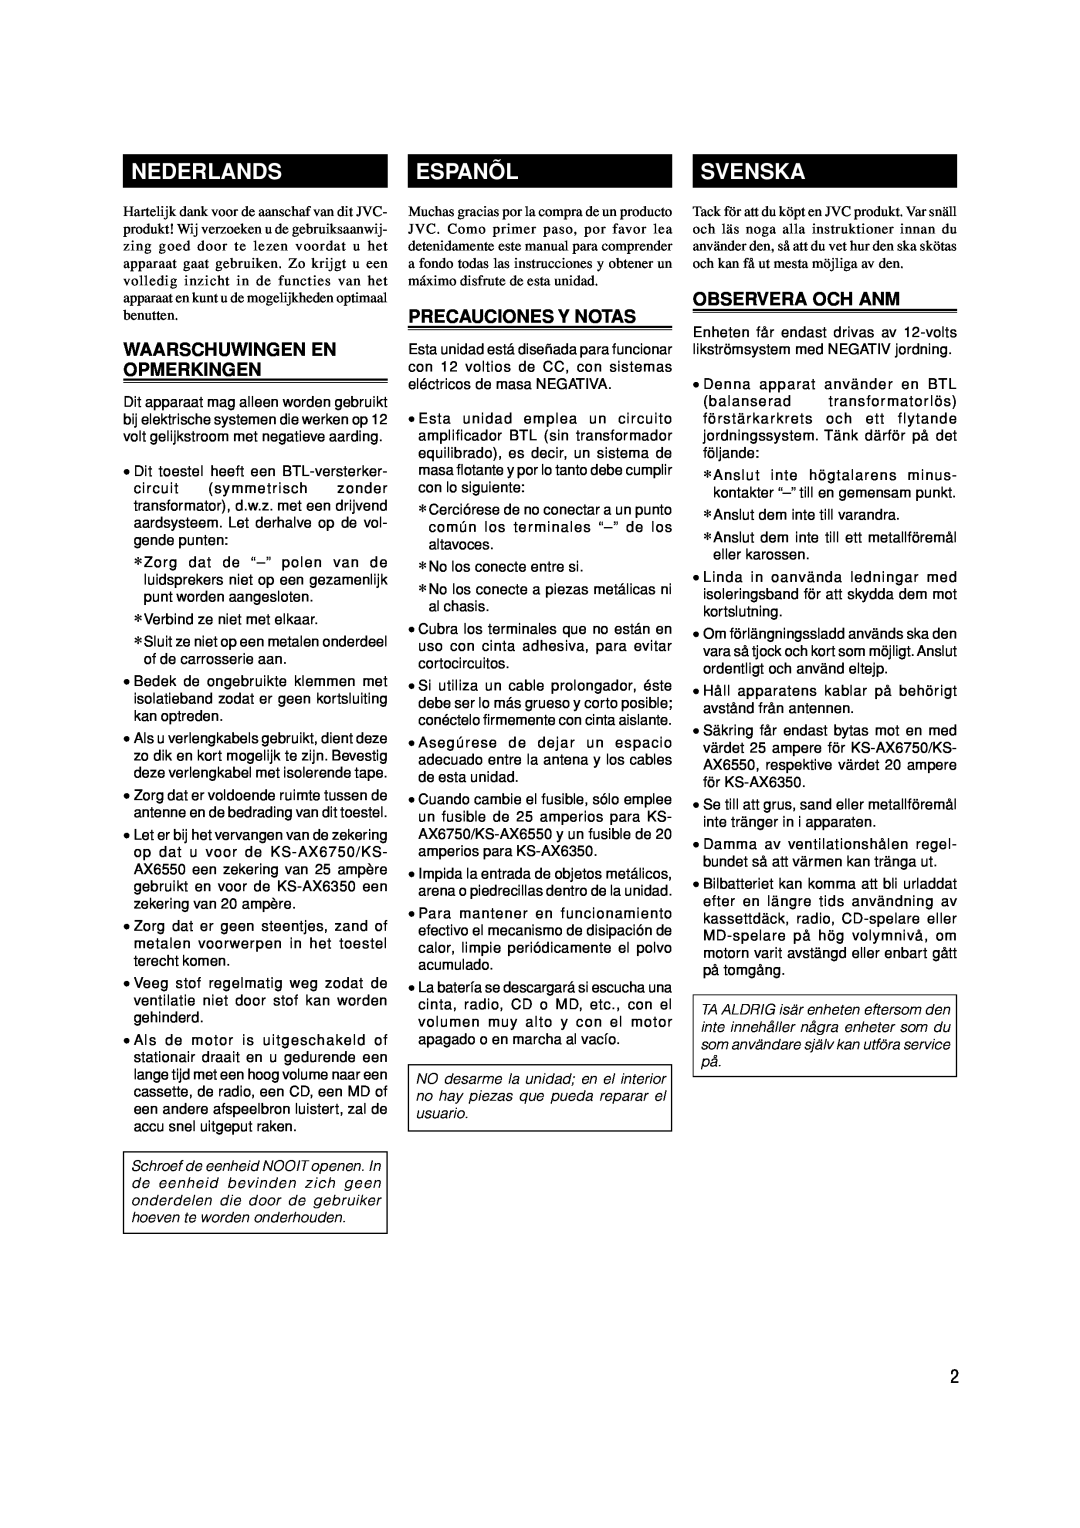 JVC KS-AX6750 manual Nederlands, Espanõl, Svenska, Waarschuwingen En Opmerkingen, Precauciones Y Notas, Observera Och Anm 